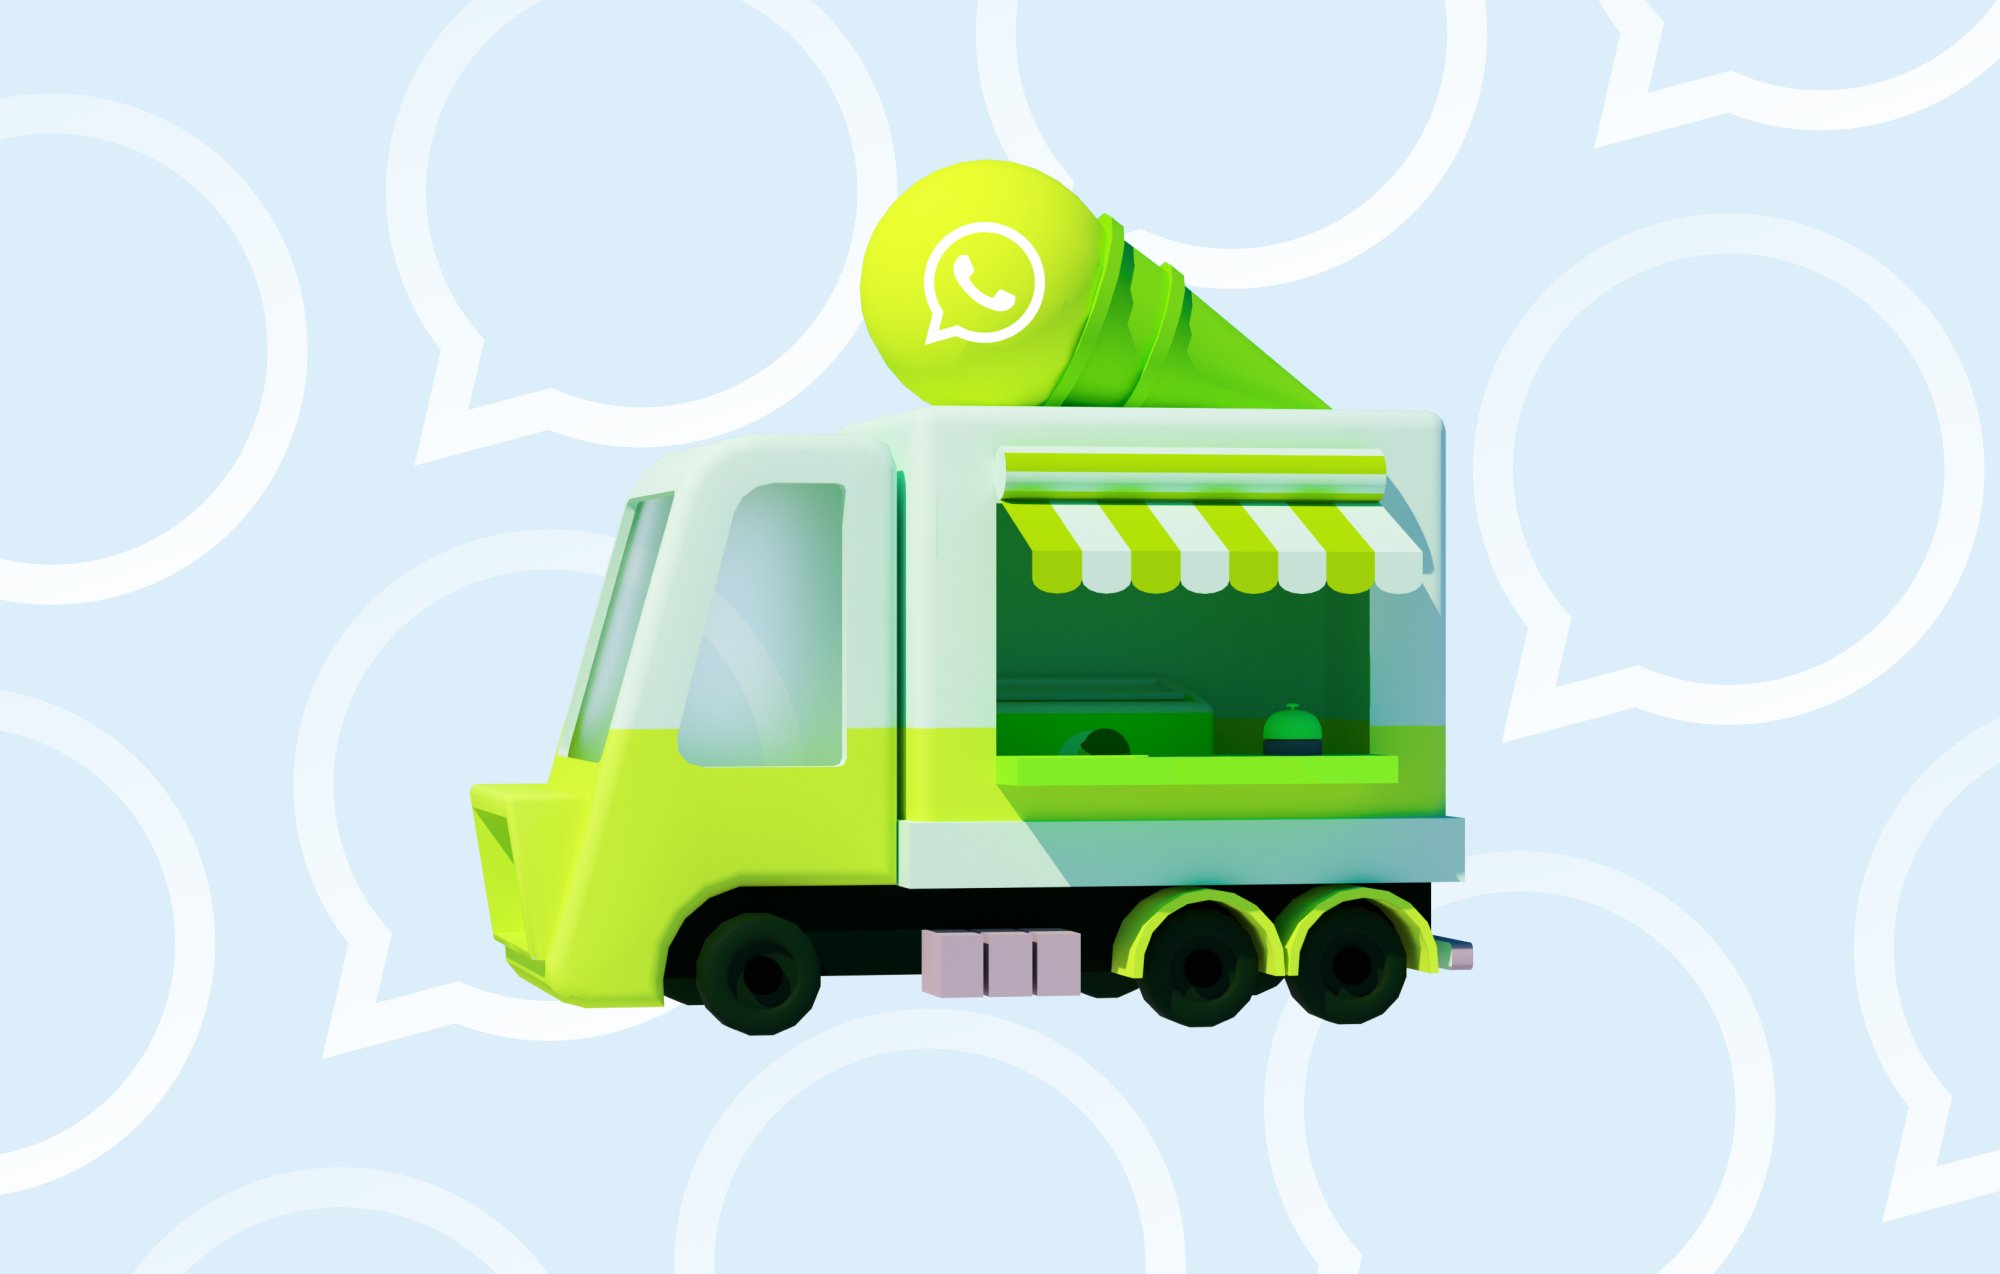 Carino camioncino dei gelati verde con il logo di WhatsApp per il post sul blog di Charles sulle agenzie di marketing su WhatsApp